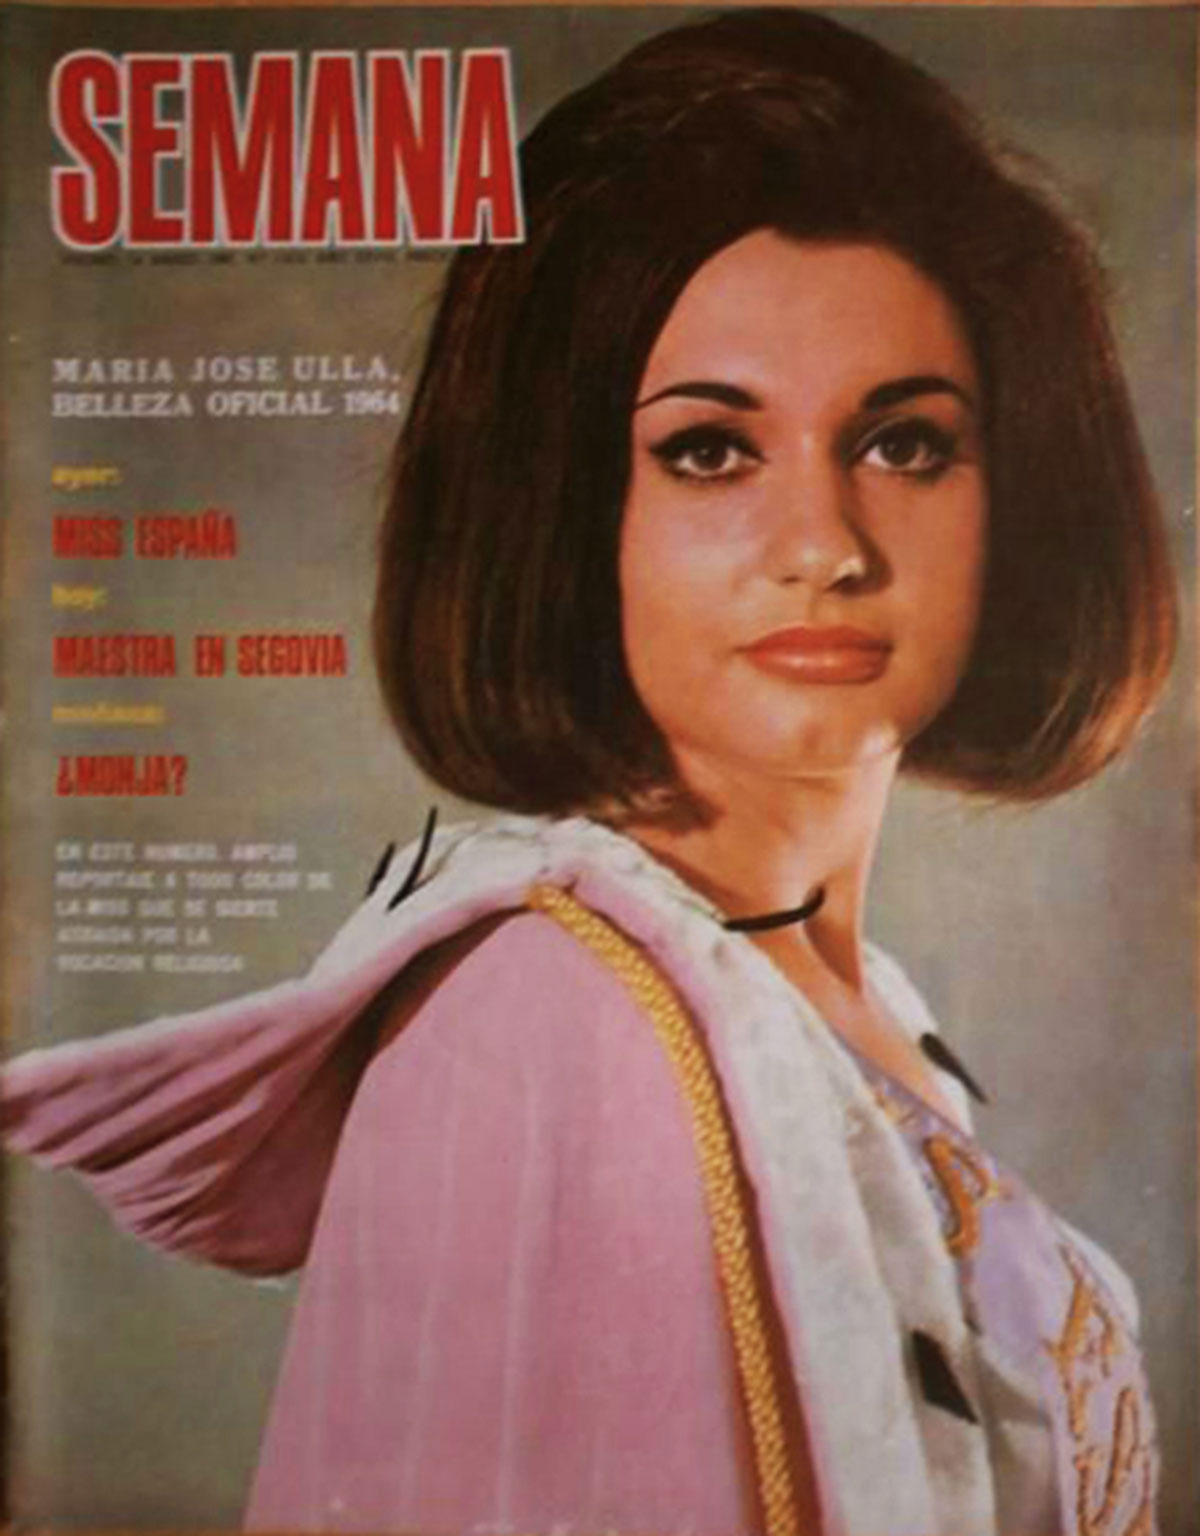 Muere María José Ulla, Miss España 1964